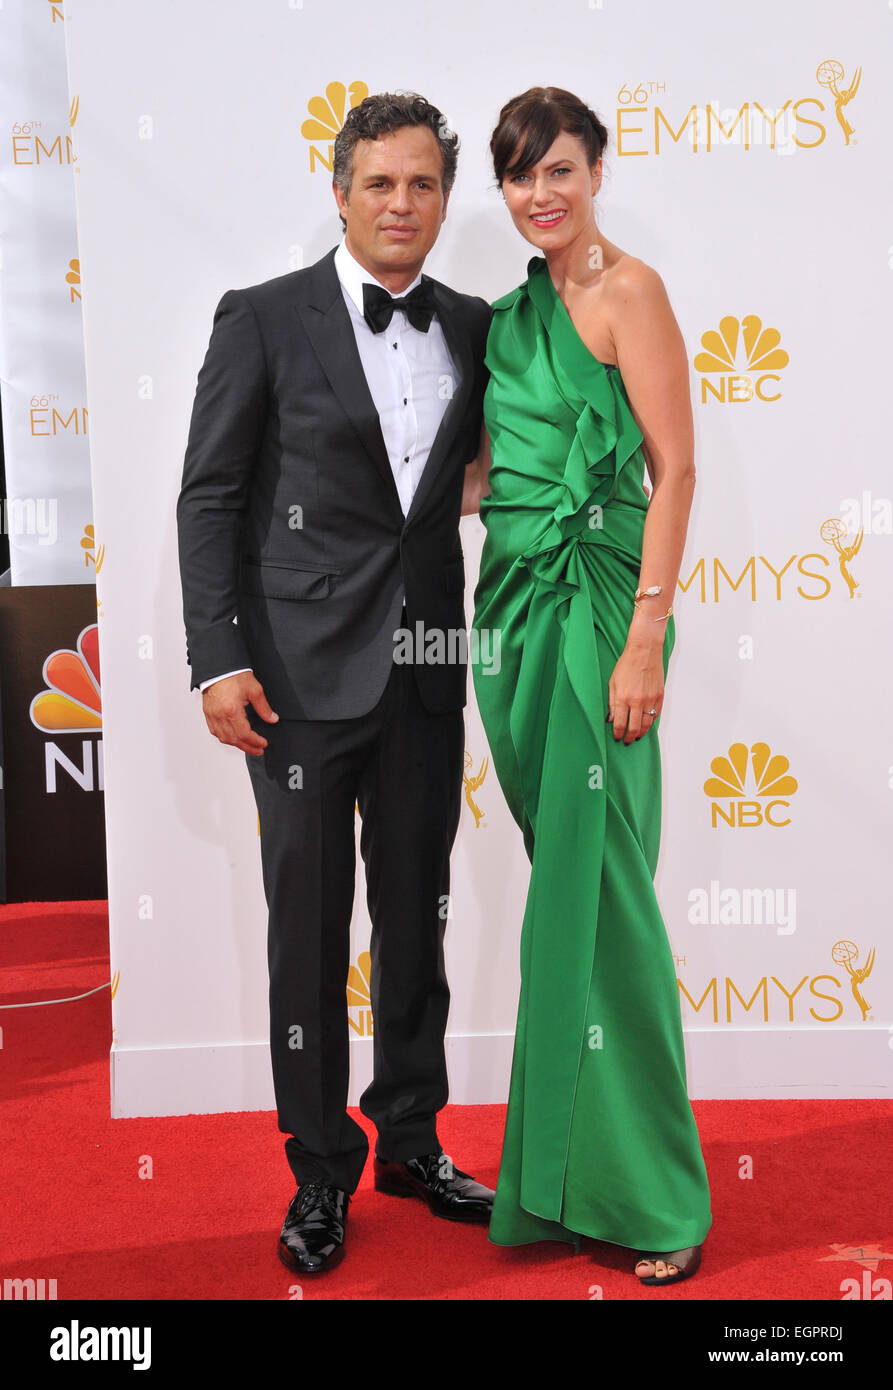 LOS ANGELES, CA - le 25 août 2014 : Mark Ruffalo & femme Sunrise Coigney à la 66e Primetime Emmy Awards au Nokia Theatre L.A. Vivre la ville de Los Angeles. Banque D'Images